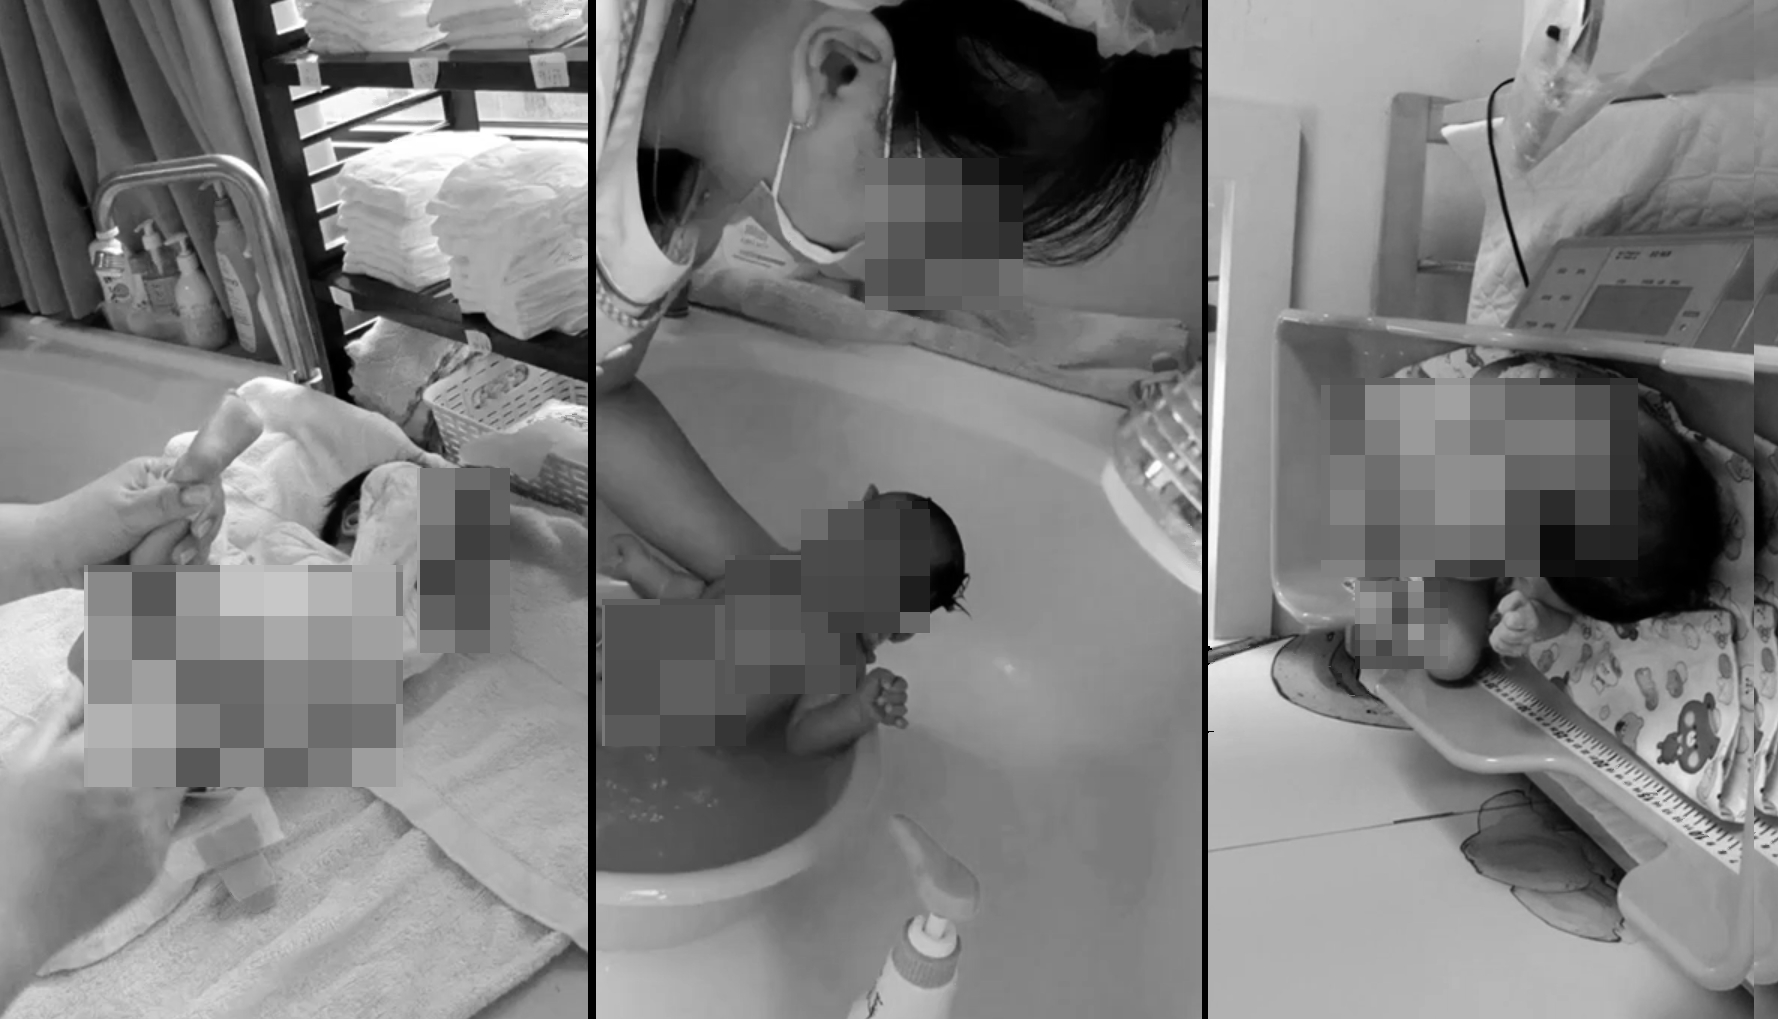 高雄市某家月子中心小夜班婴儿照顾员爆料，去年七月她被学姊指使协助拍摄女婴沐浴、换尿布影片，学姐把影片传给男性友人。图／记者爆料网提供